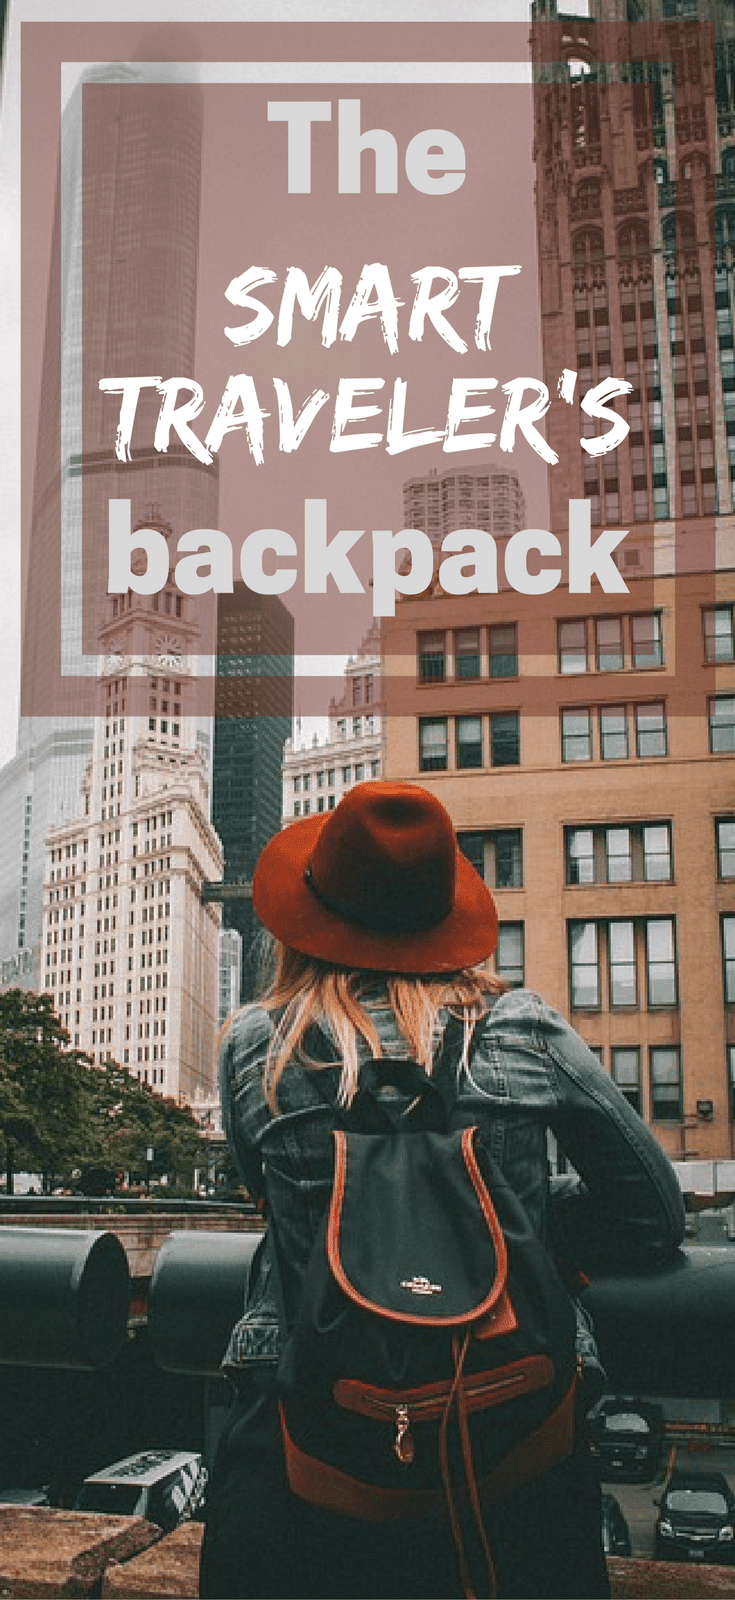 The Smart Traveler’s Backpack